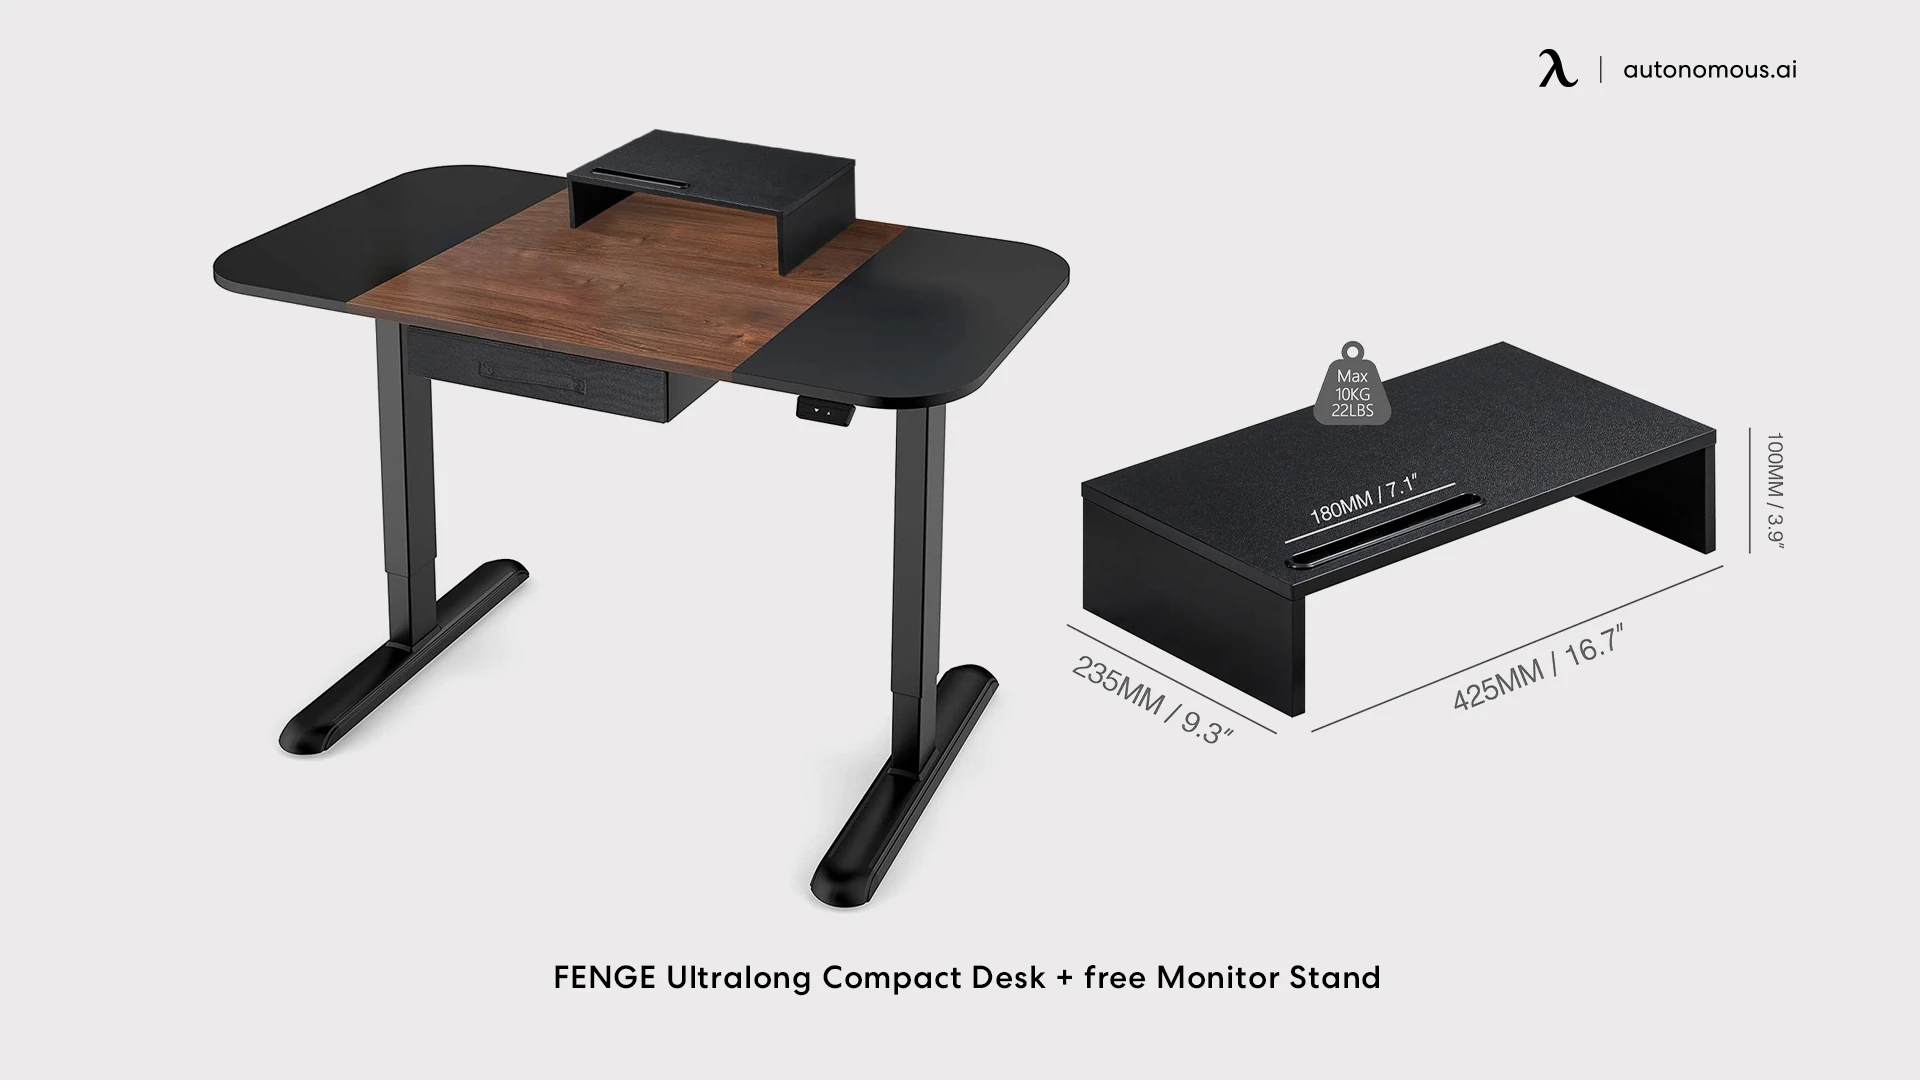 FENGE Ultralong Compact Desk